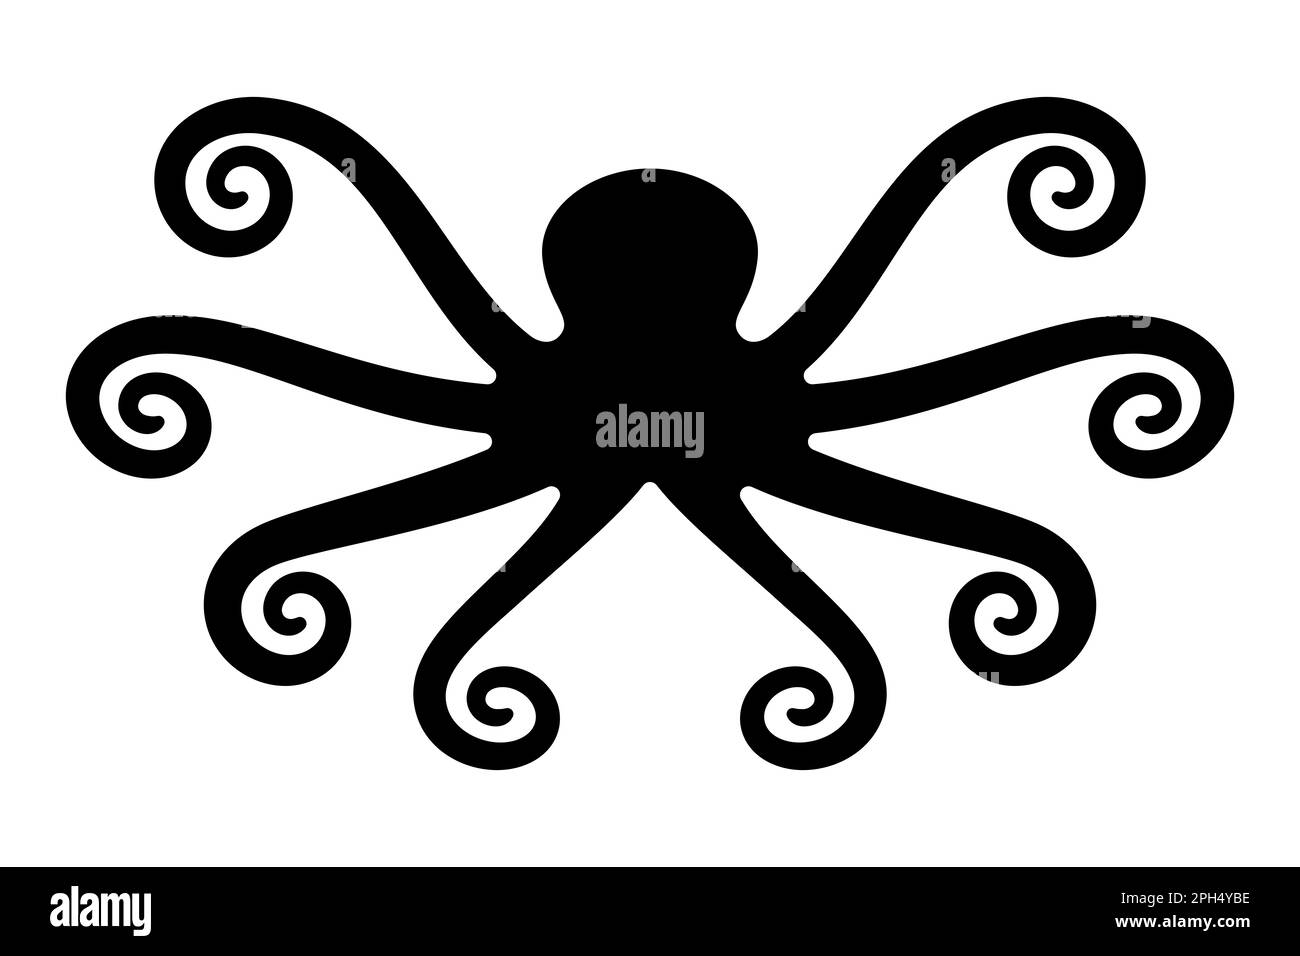 Kraken, simbolo di un leggendario mostro di mare, di un polpo o di un polipo di enormi dimensioni con otto tentacoli. Anche sinonimo di insaziabile avidità. Foto Stock